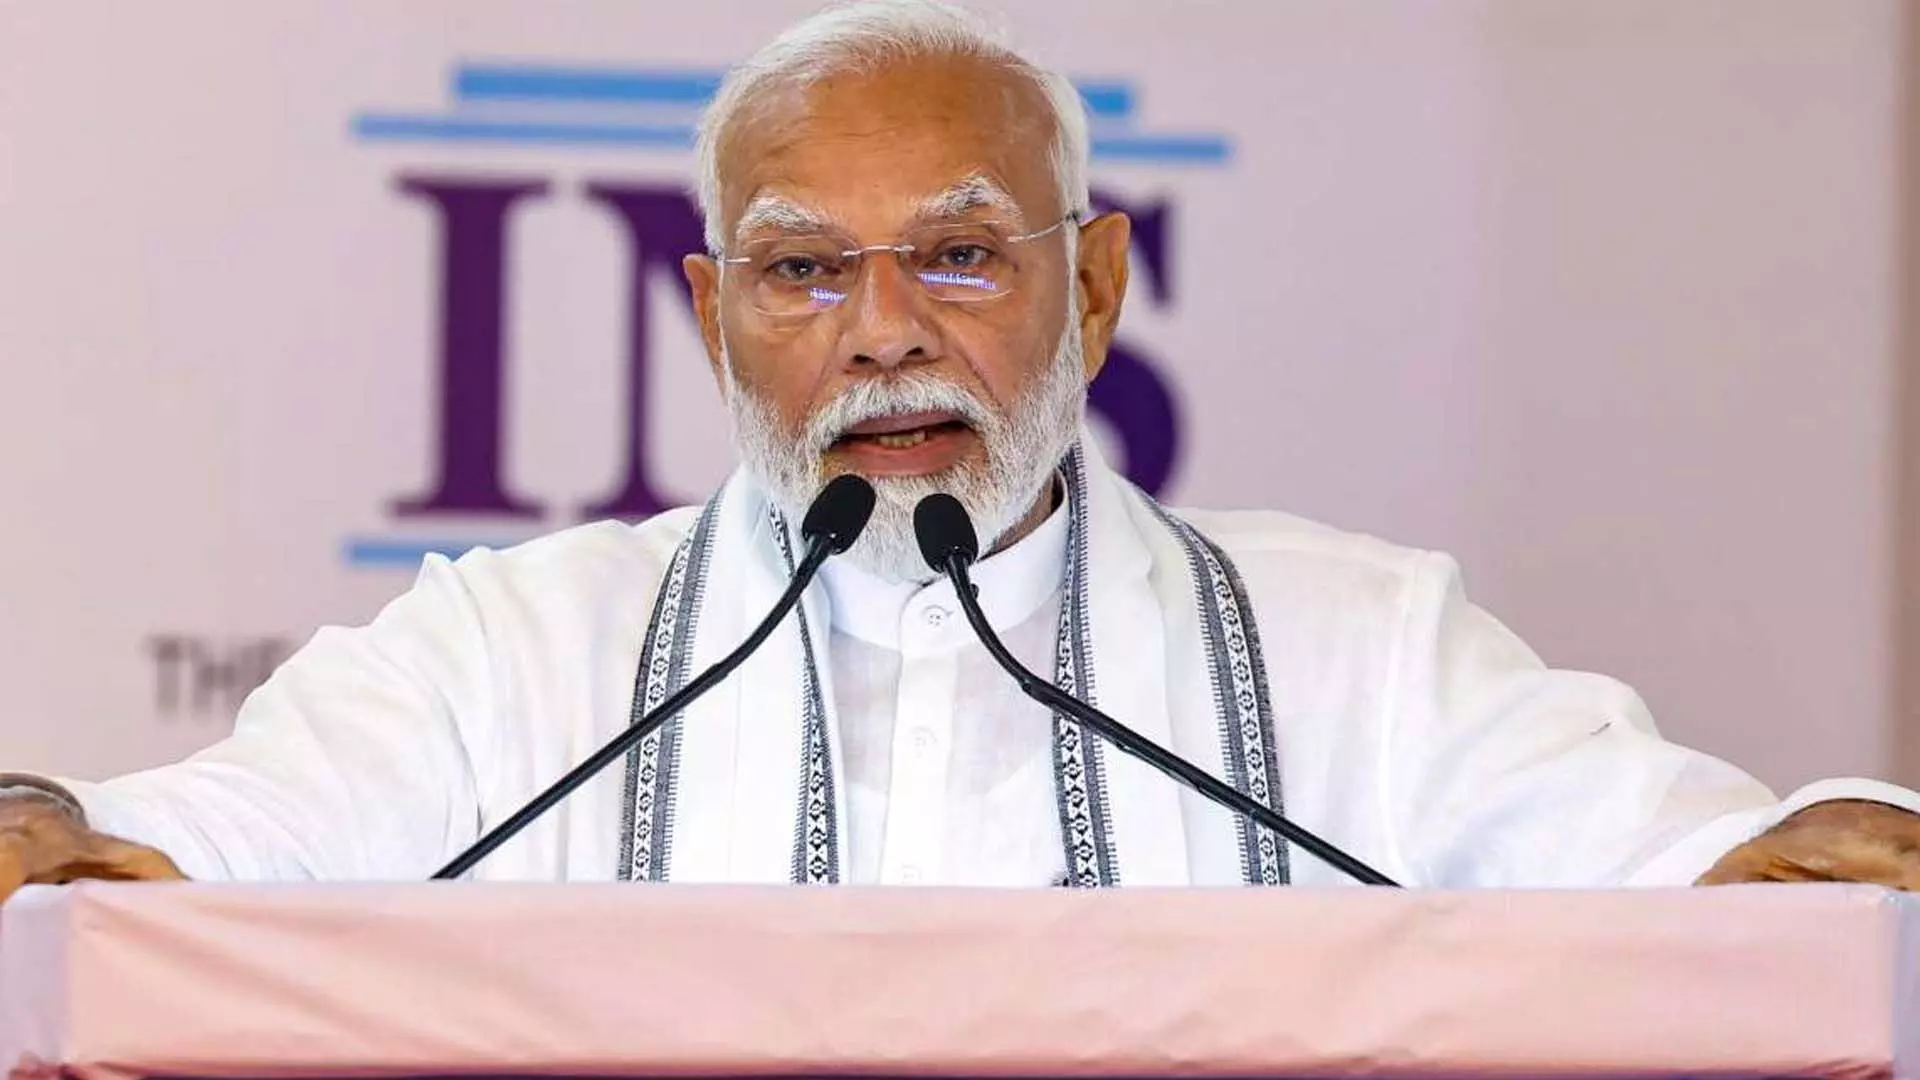 dehli: प्रधानमंत्री मोदी ने बजट पश्चात सम्मेलन में उद्योग जगत के नेताओं को संबोधित किया